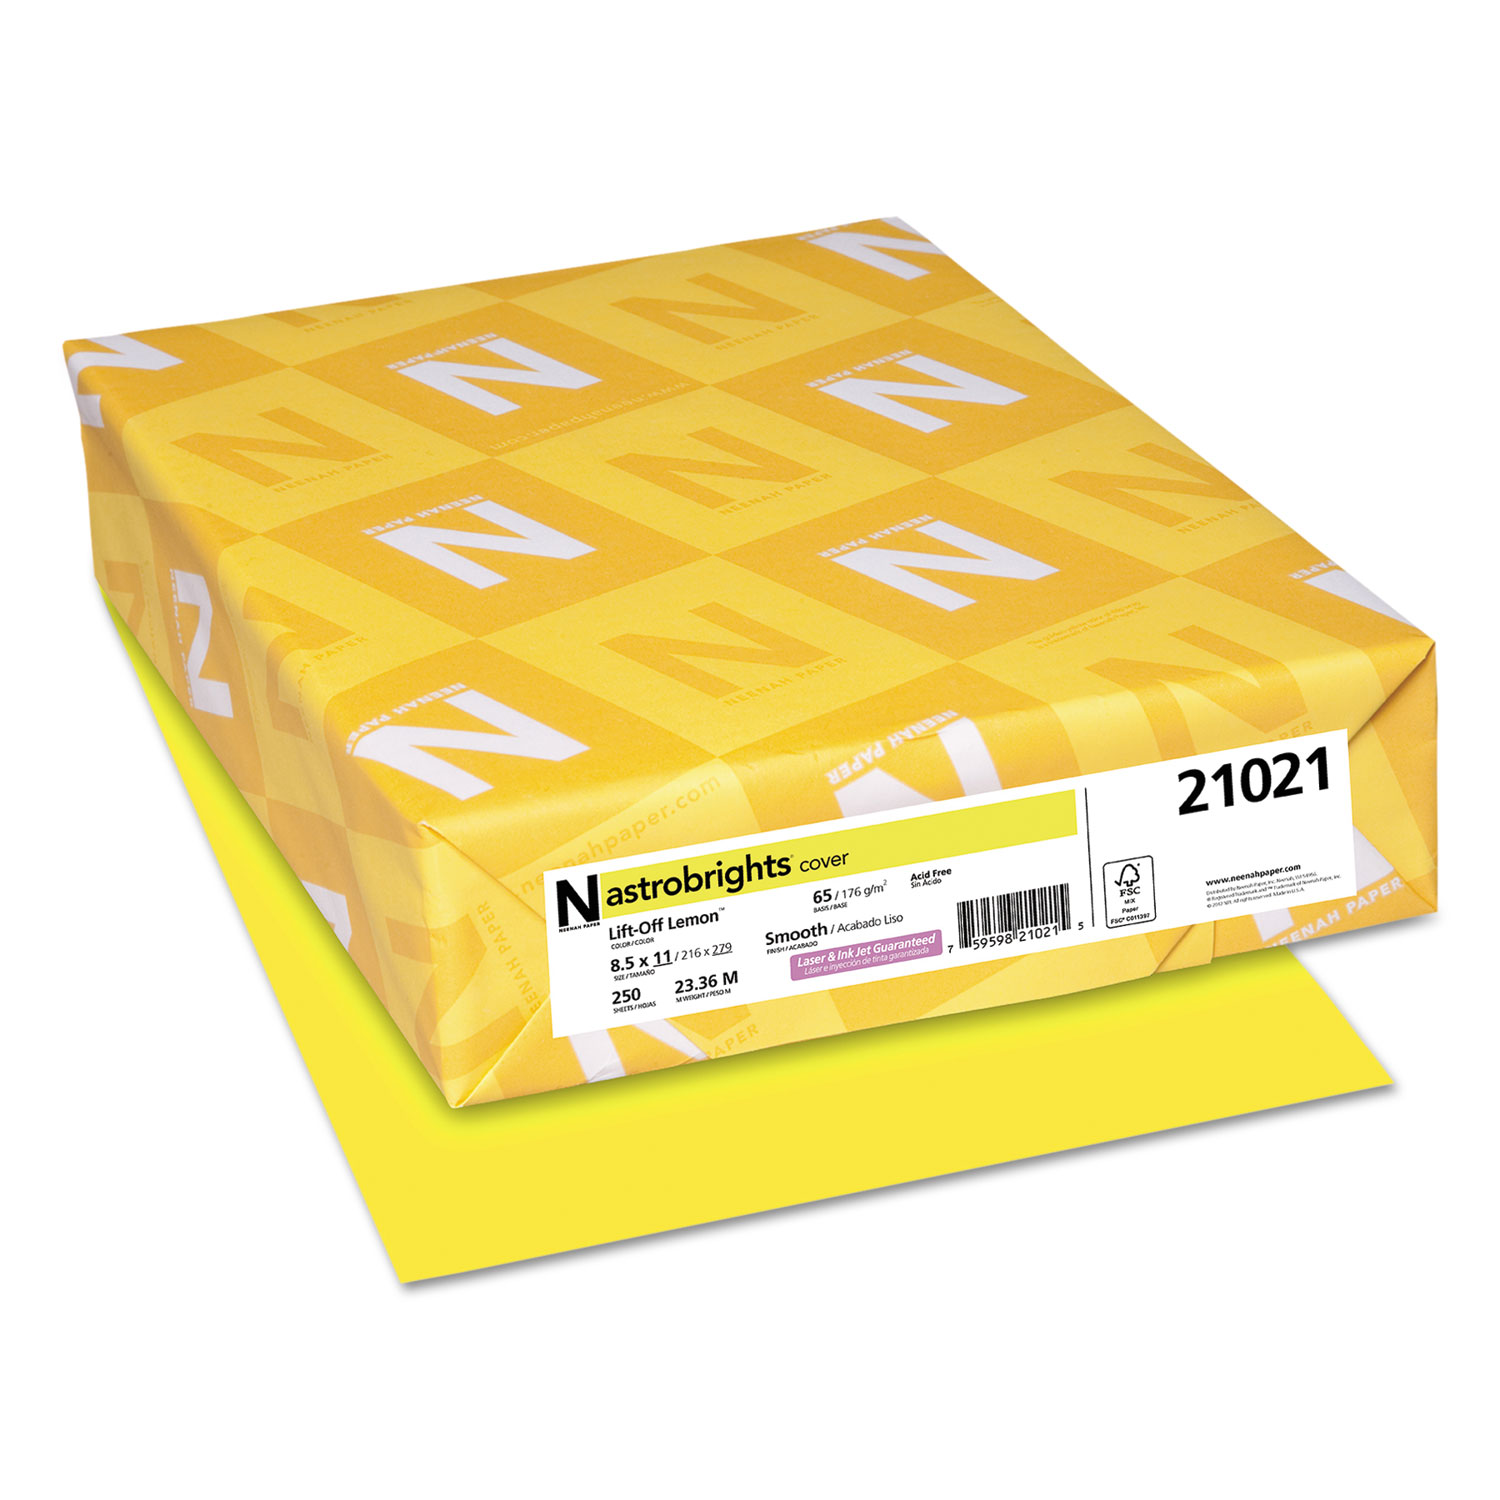  Twavang 25 Sheets Yellow Cardstock Paper 8.5'' x 11